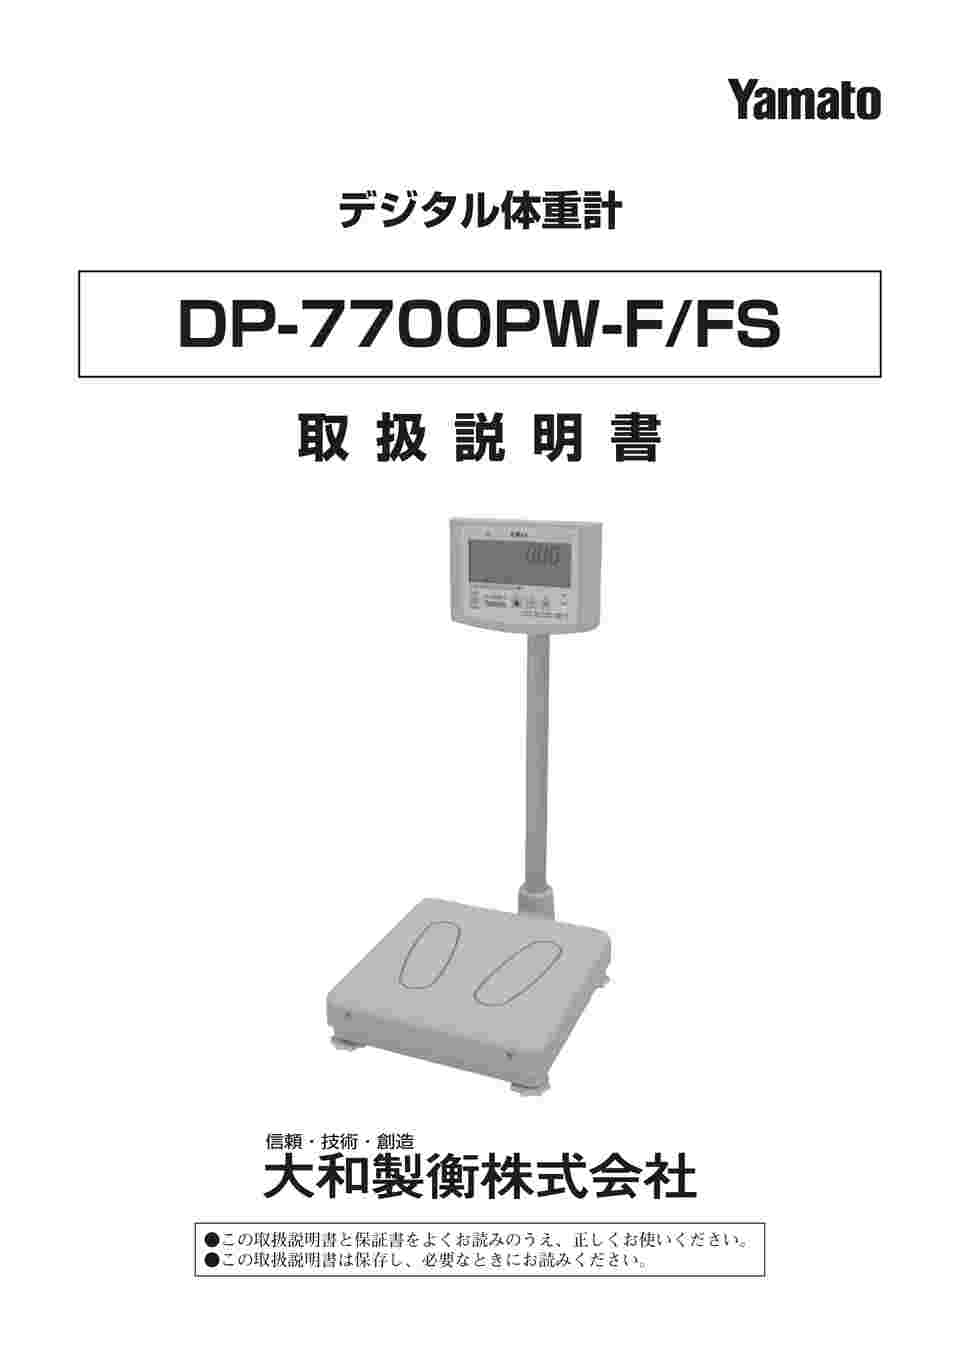 早い者勝ち ファースト店アズワン AS ONE デジタル体重計 検定付 一体型 DP-7800PW-200